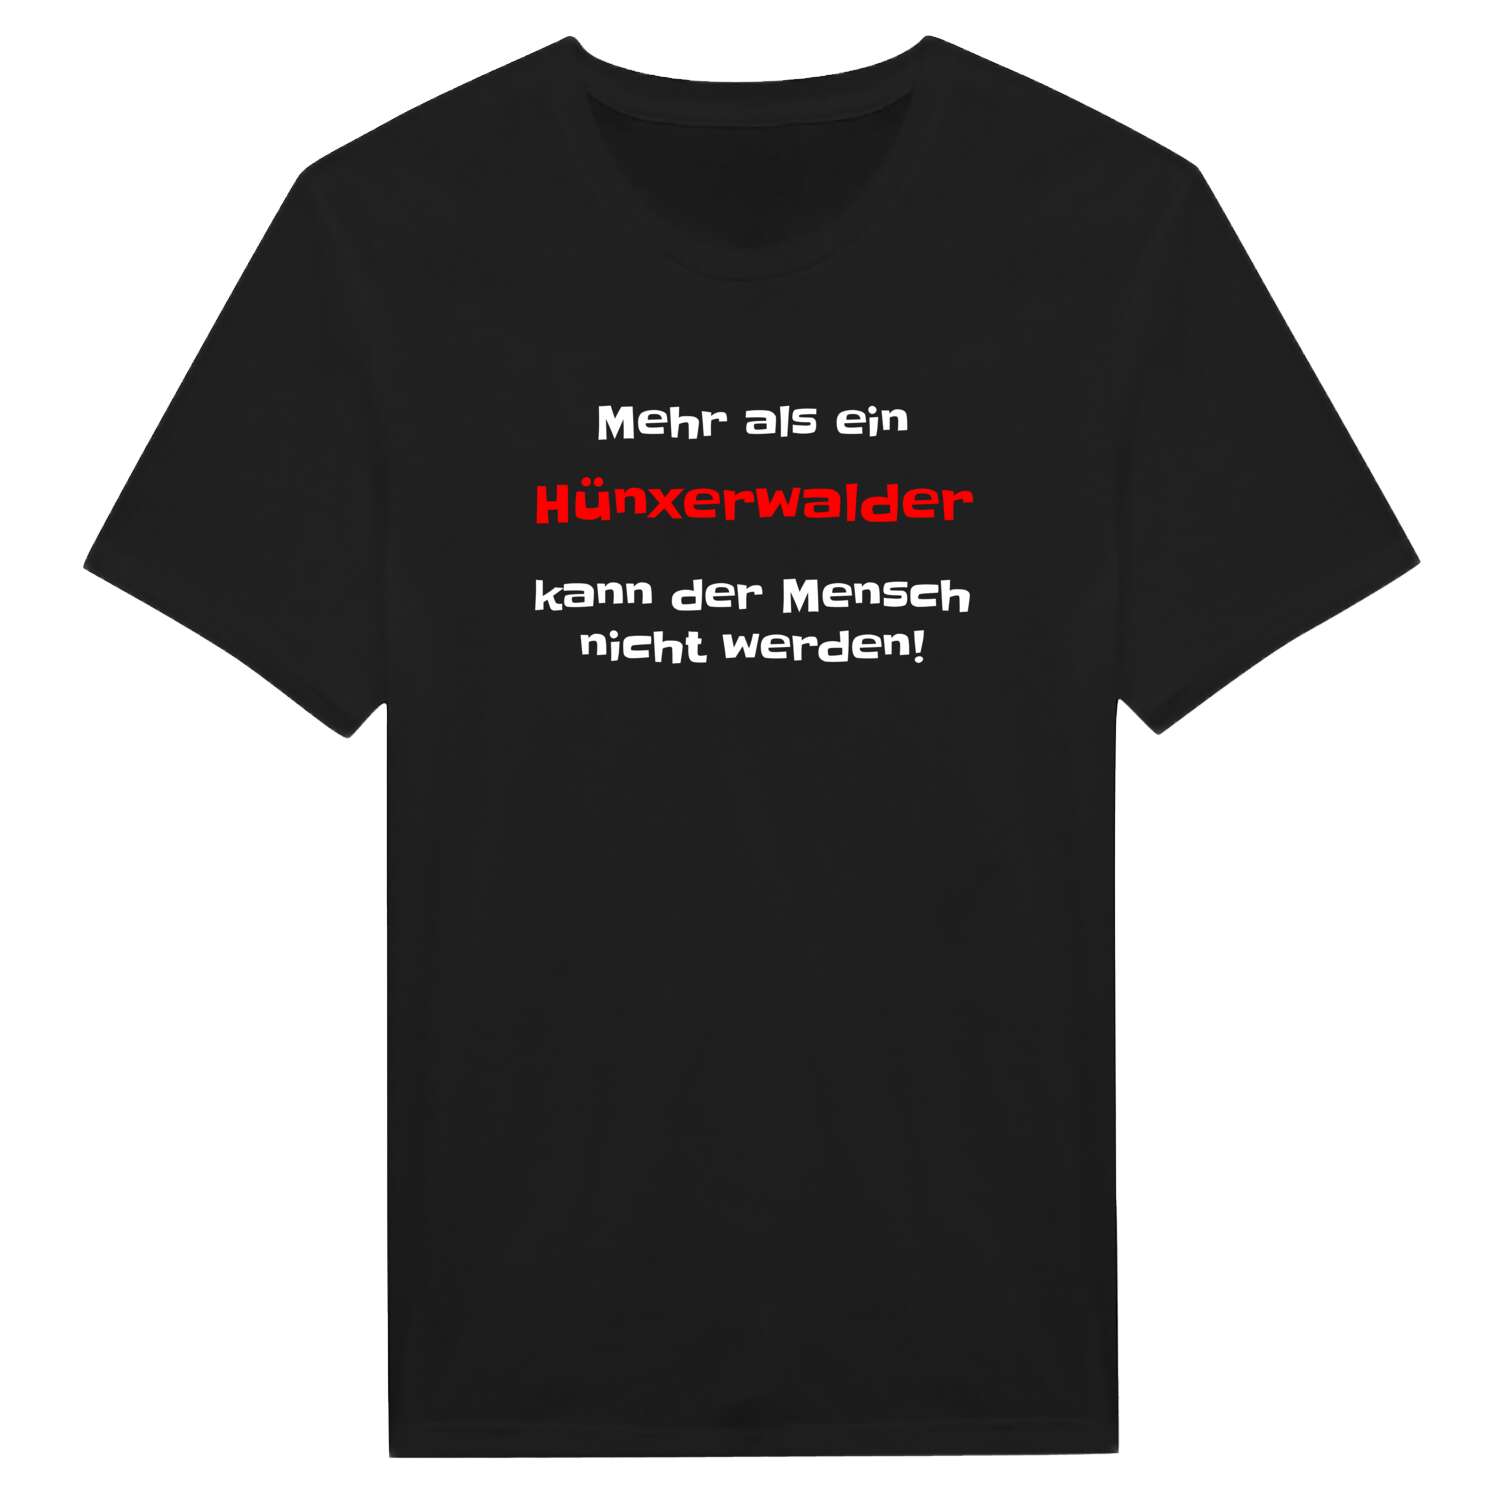 Hünxerwald T-Shirt »Mehr als ein«